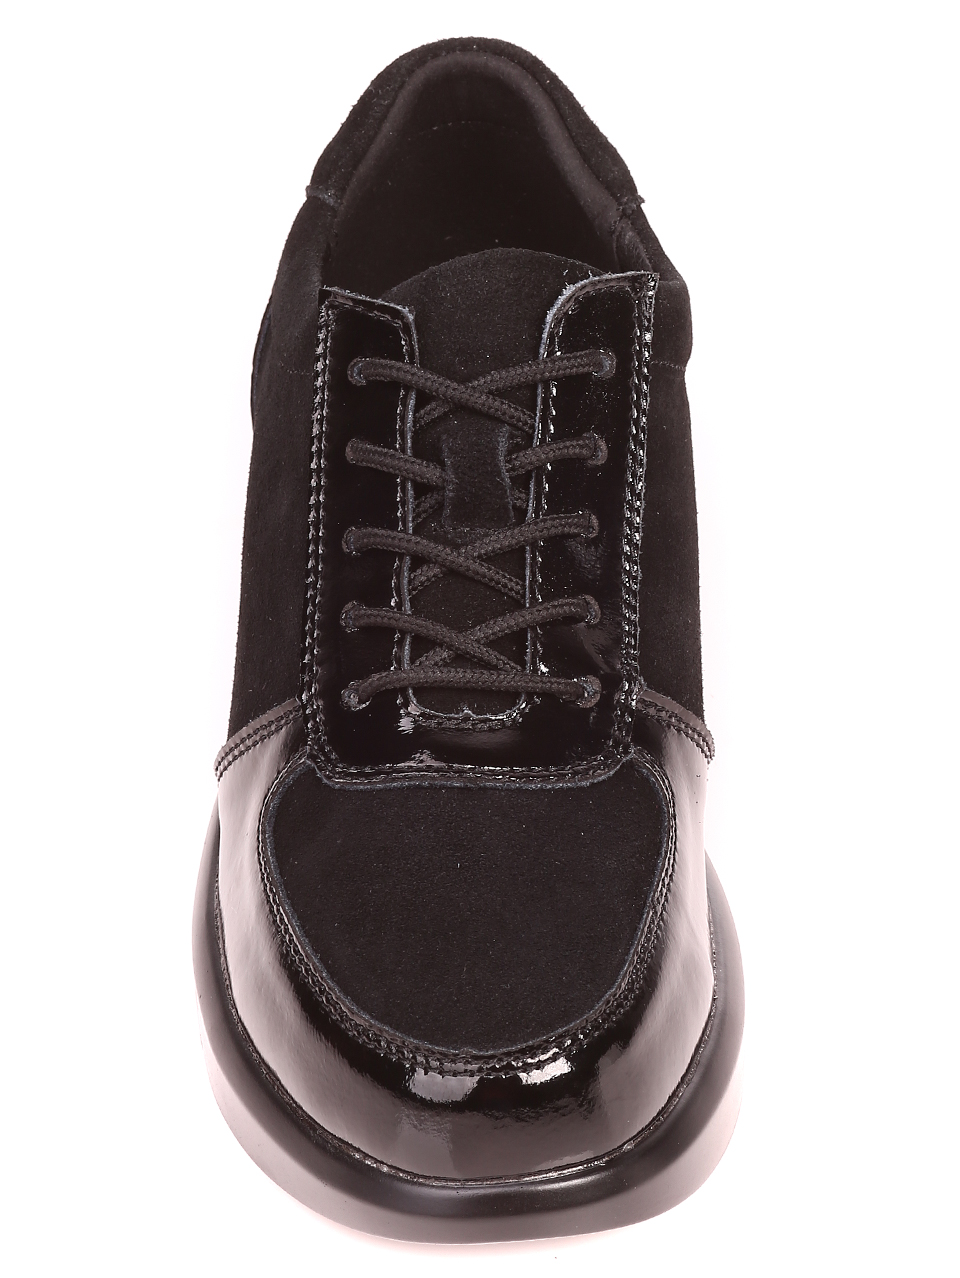 Ежедневни дамски лачени обувки в черно 3AF-21575 black 